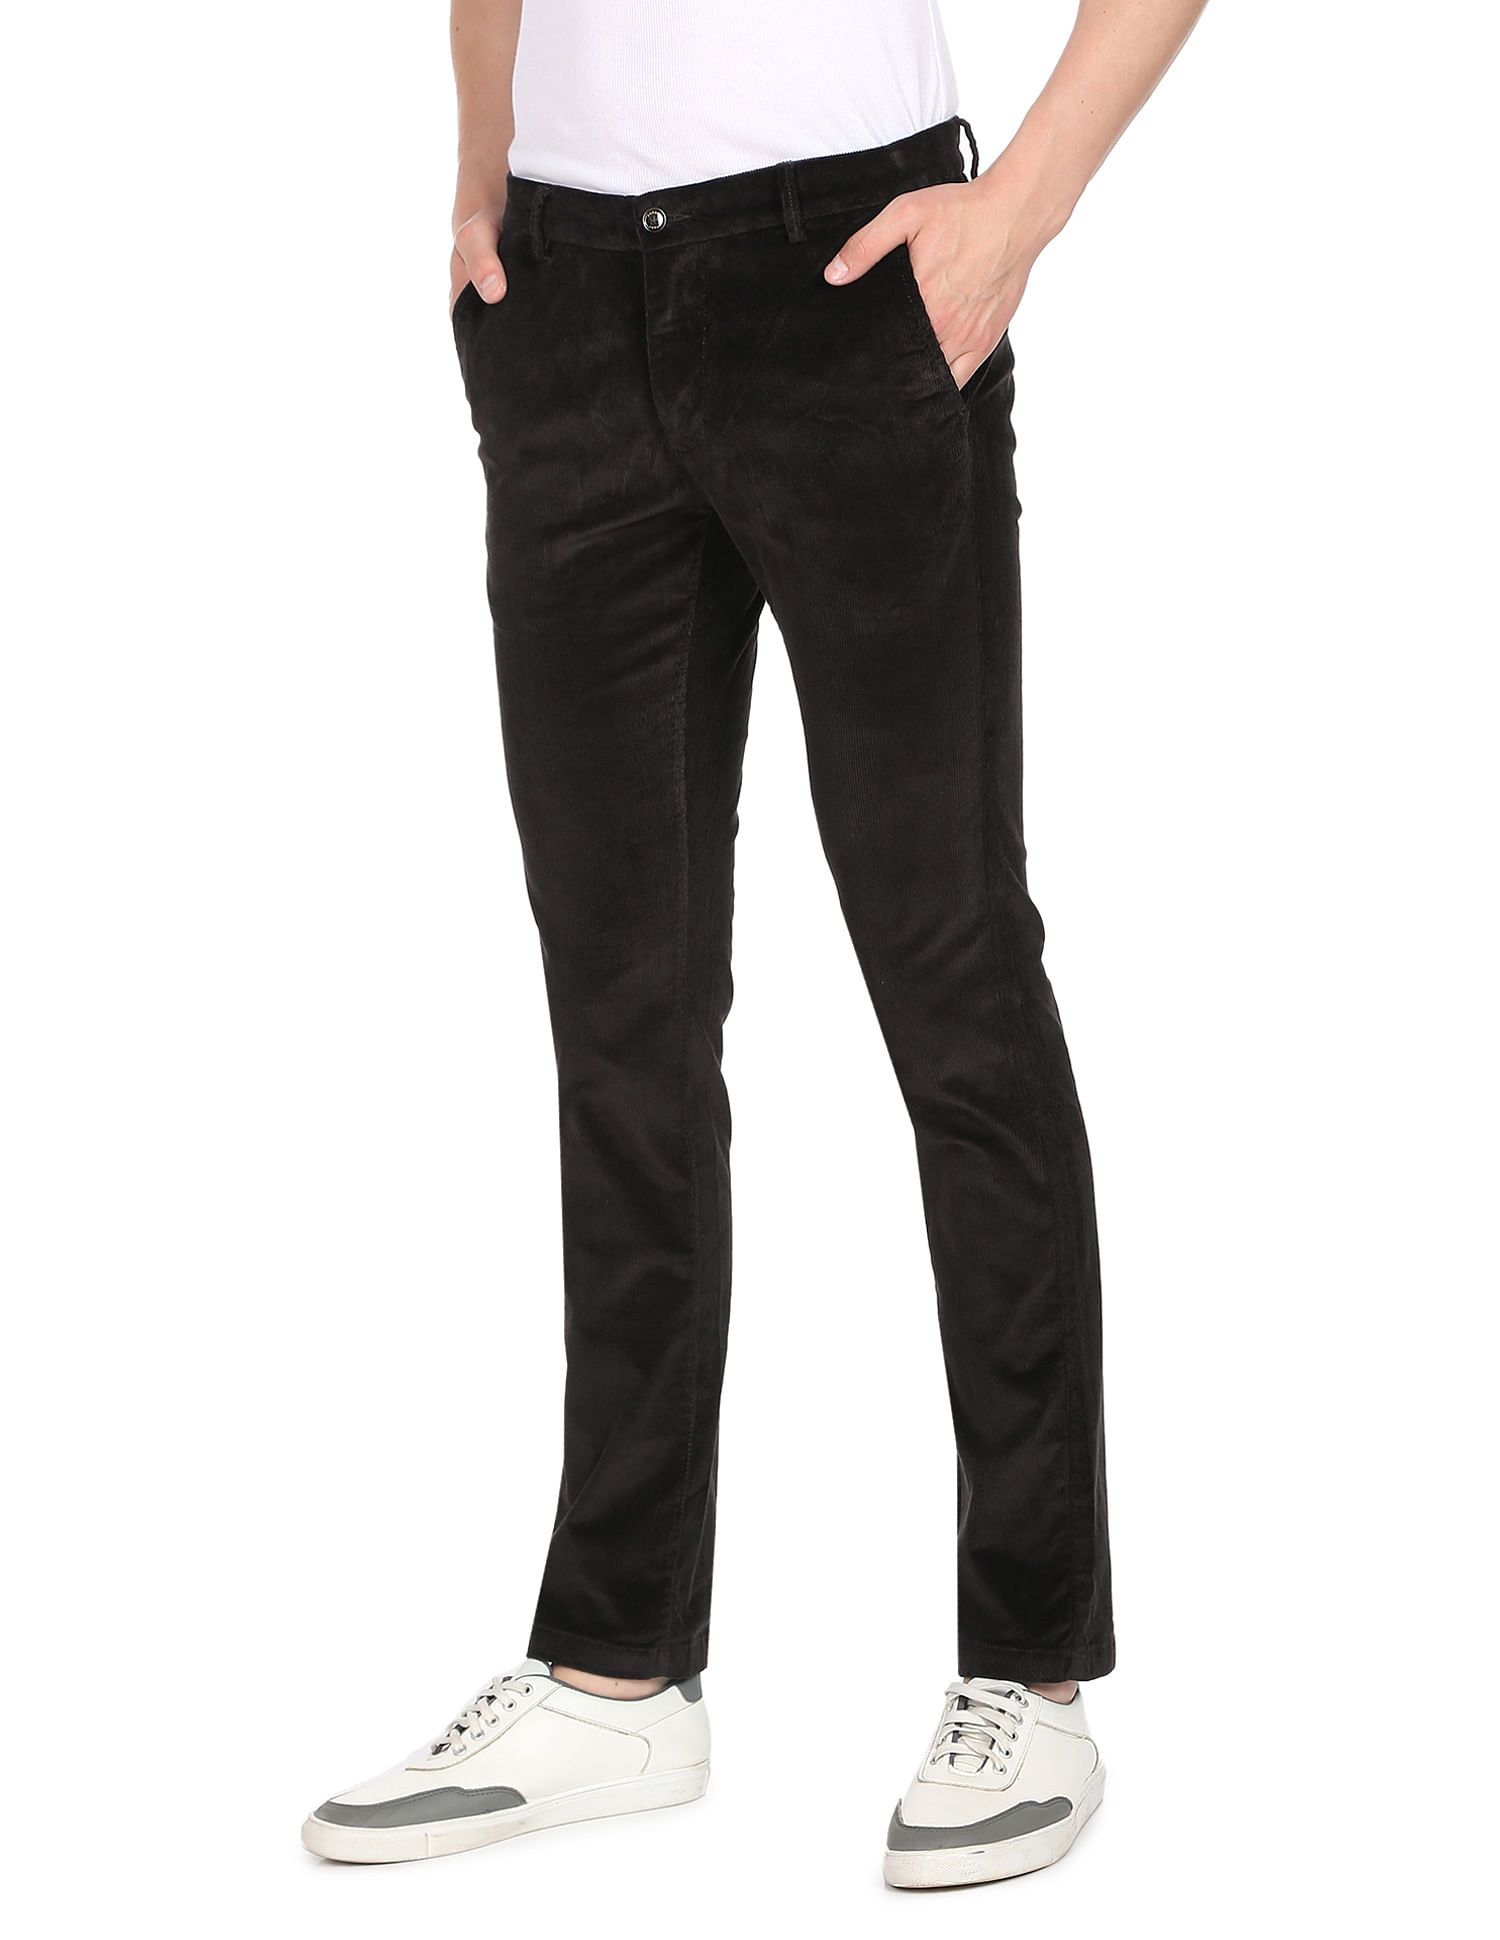 MAX Solid Low Rise Slim Fit Trousers  Max  Hosur Road  Bengaluru